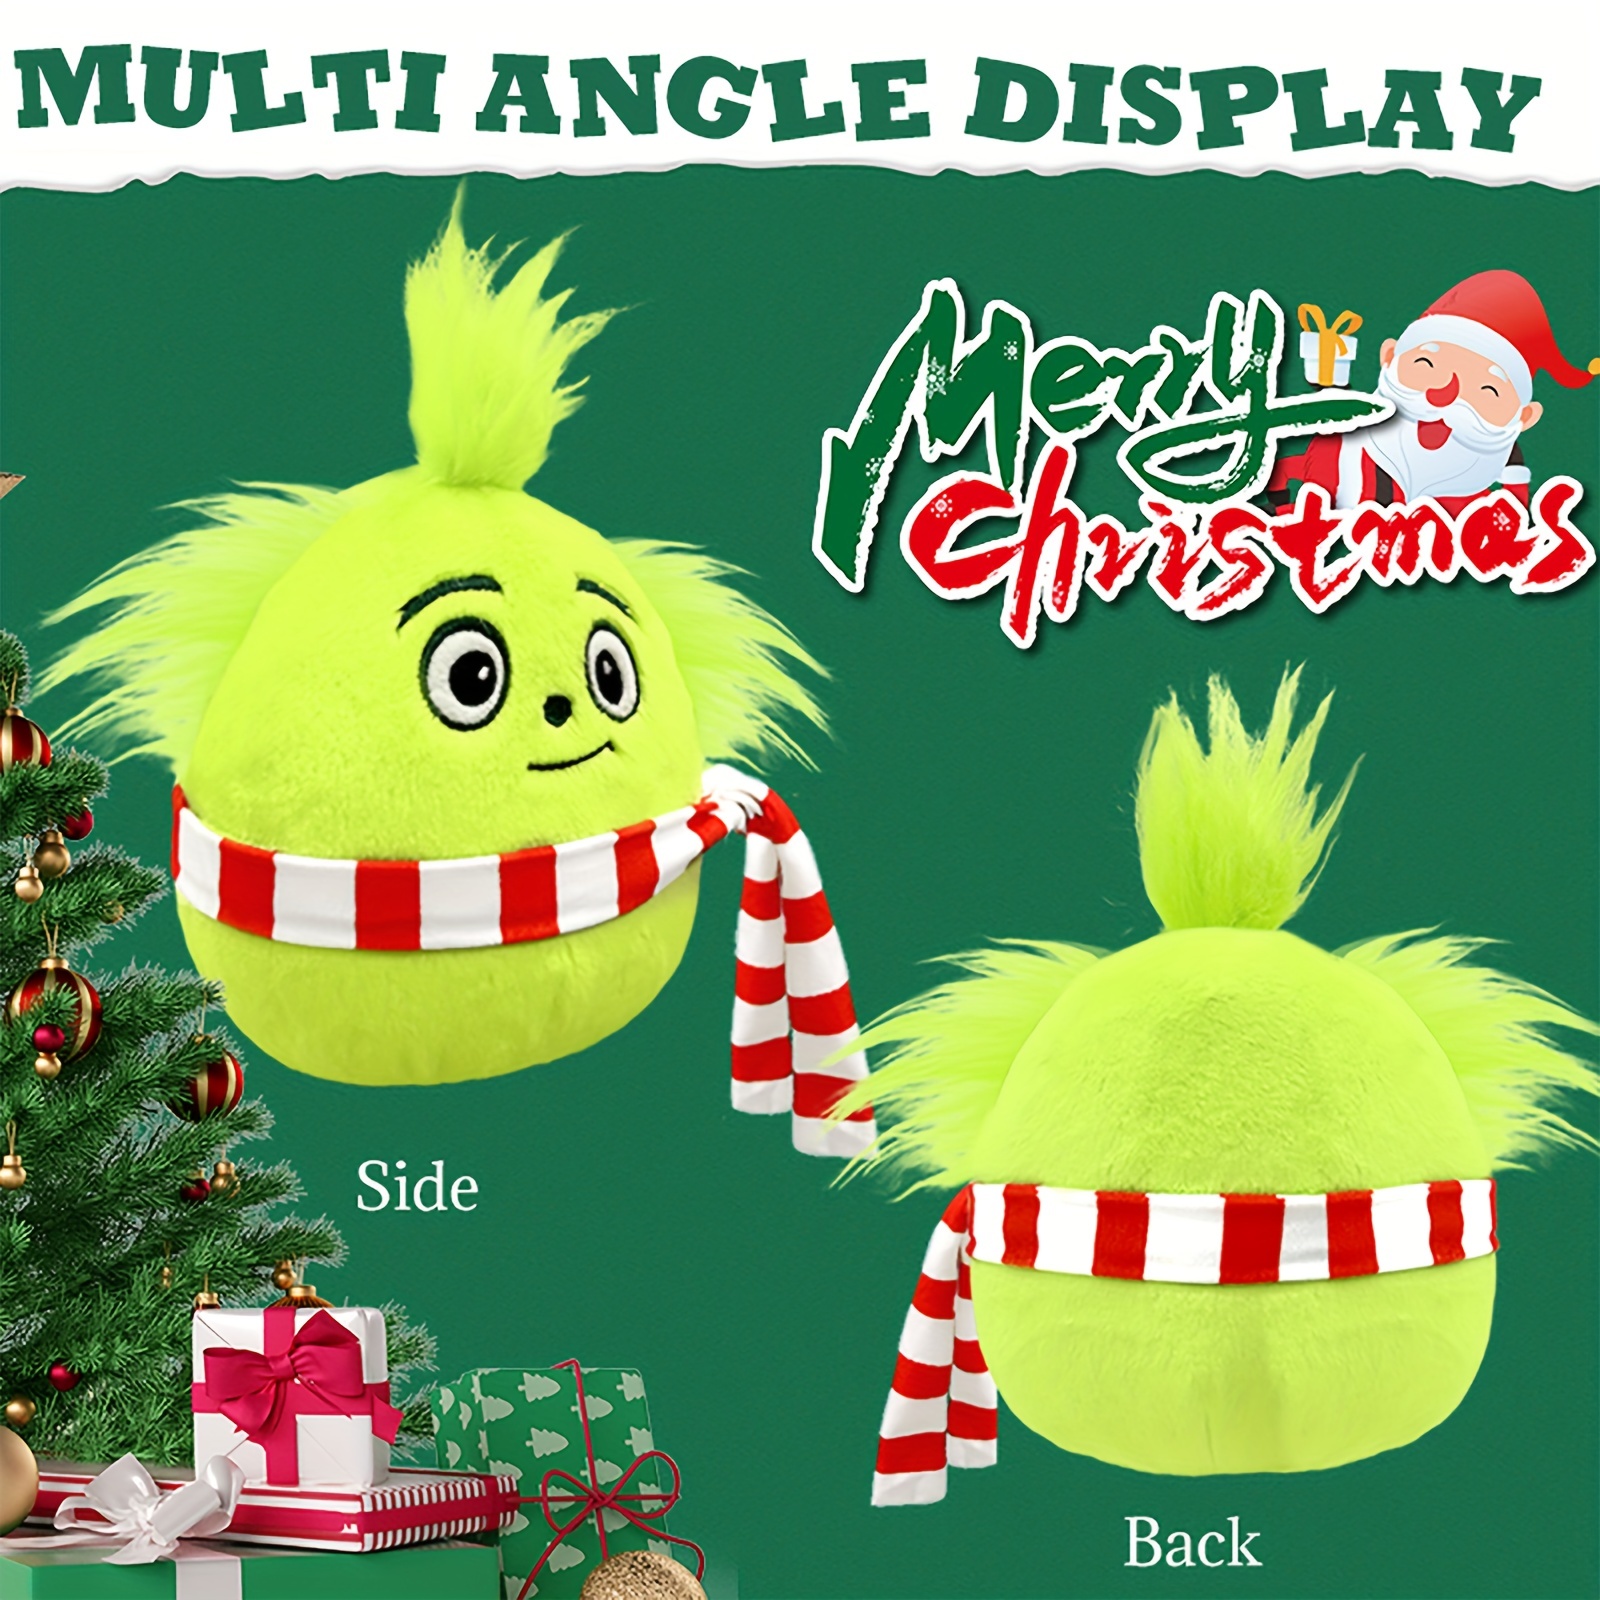  HATEEMO Christmas Decorations Plush, Christmas Plush Green  Monster Doll, Suitable for Christmas Decorations/Gifts (Green Monster B) :  Toys & Games